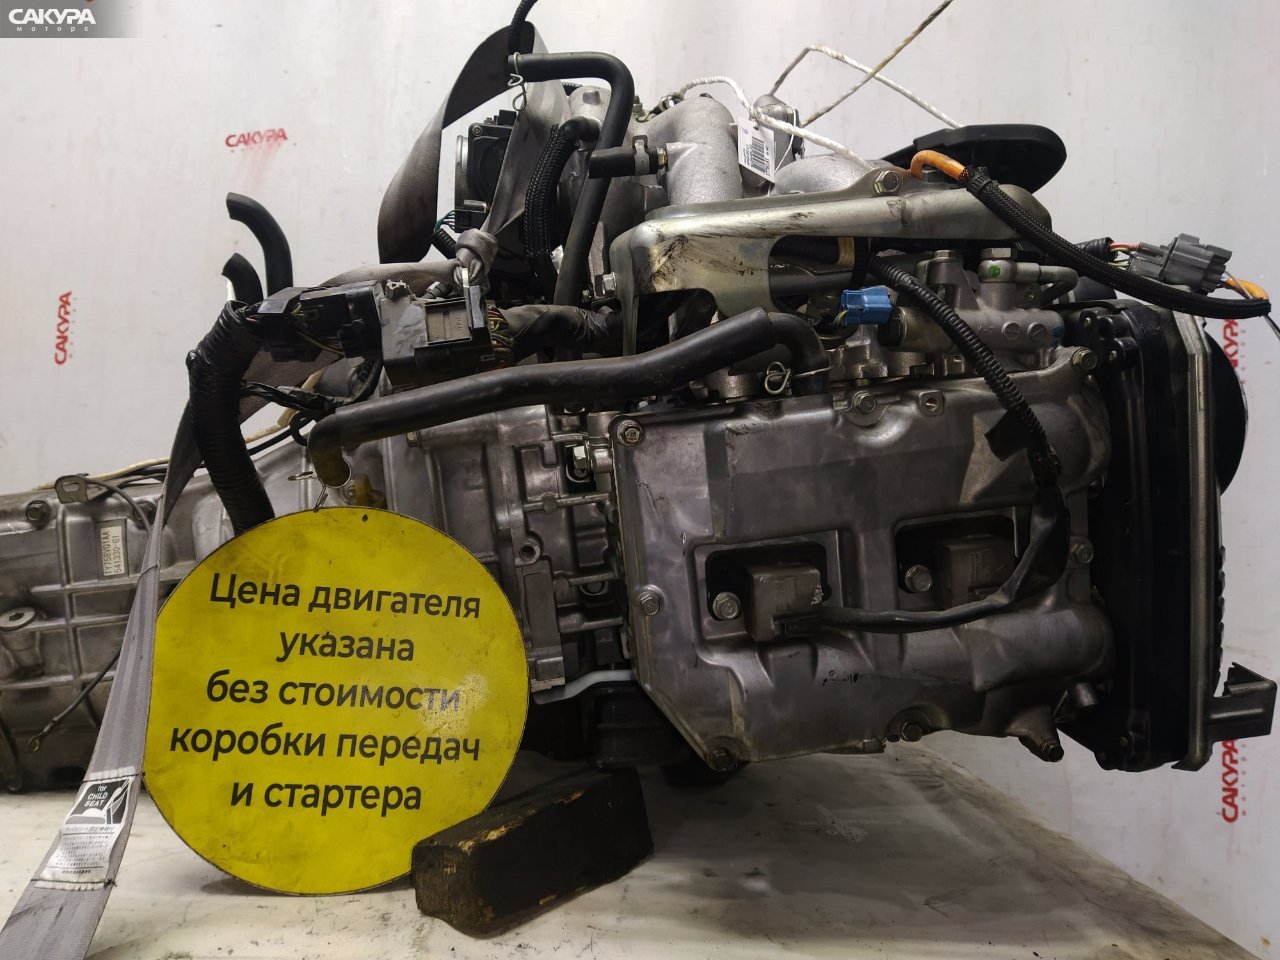 Двигатель Subaru Impreza GH3 EL154: купить в Сакура Красноярск.